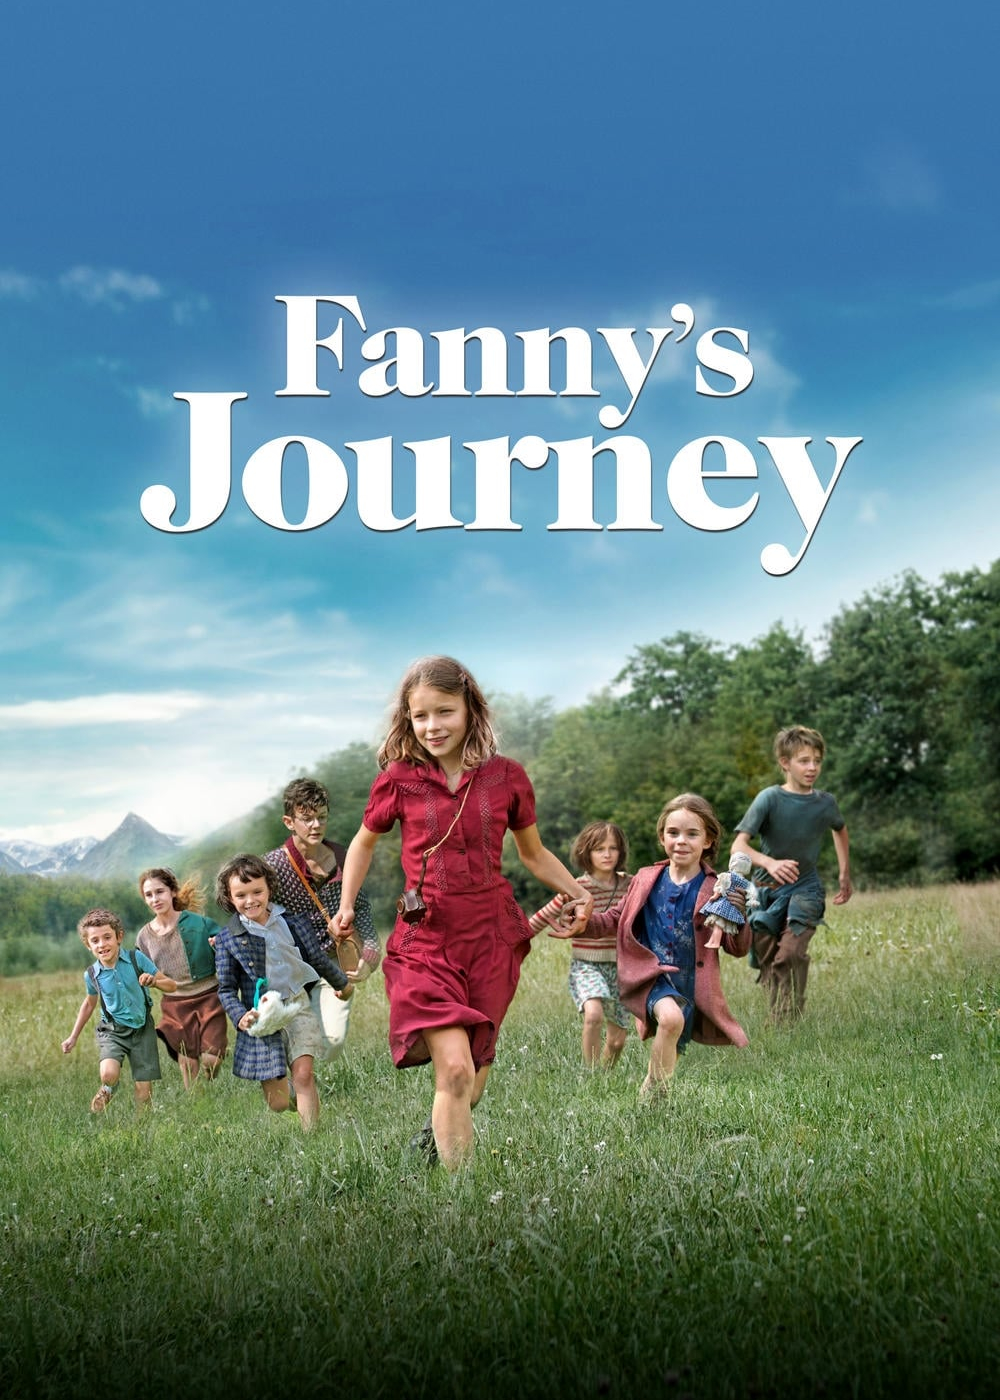 Fanny's Journey (Fanny's Journey) [2016]